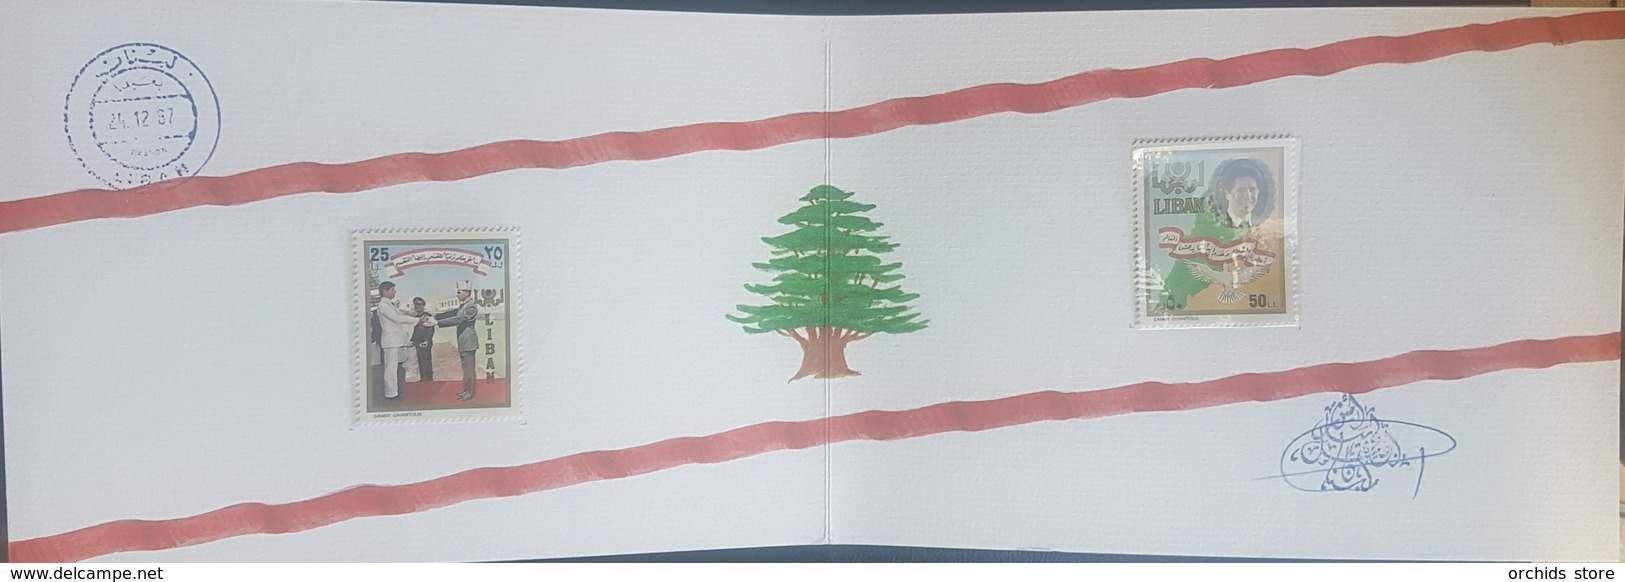 Lebanon 1987 President Gemayel - Ltd Edition Deluxe Folder - MNH, Signed By The President - Lebanon